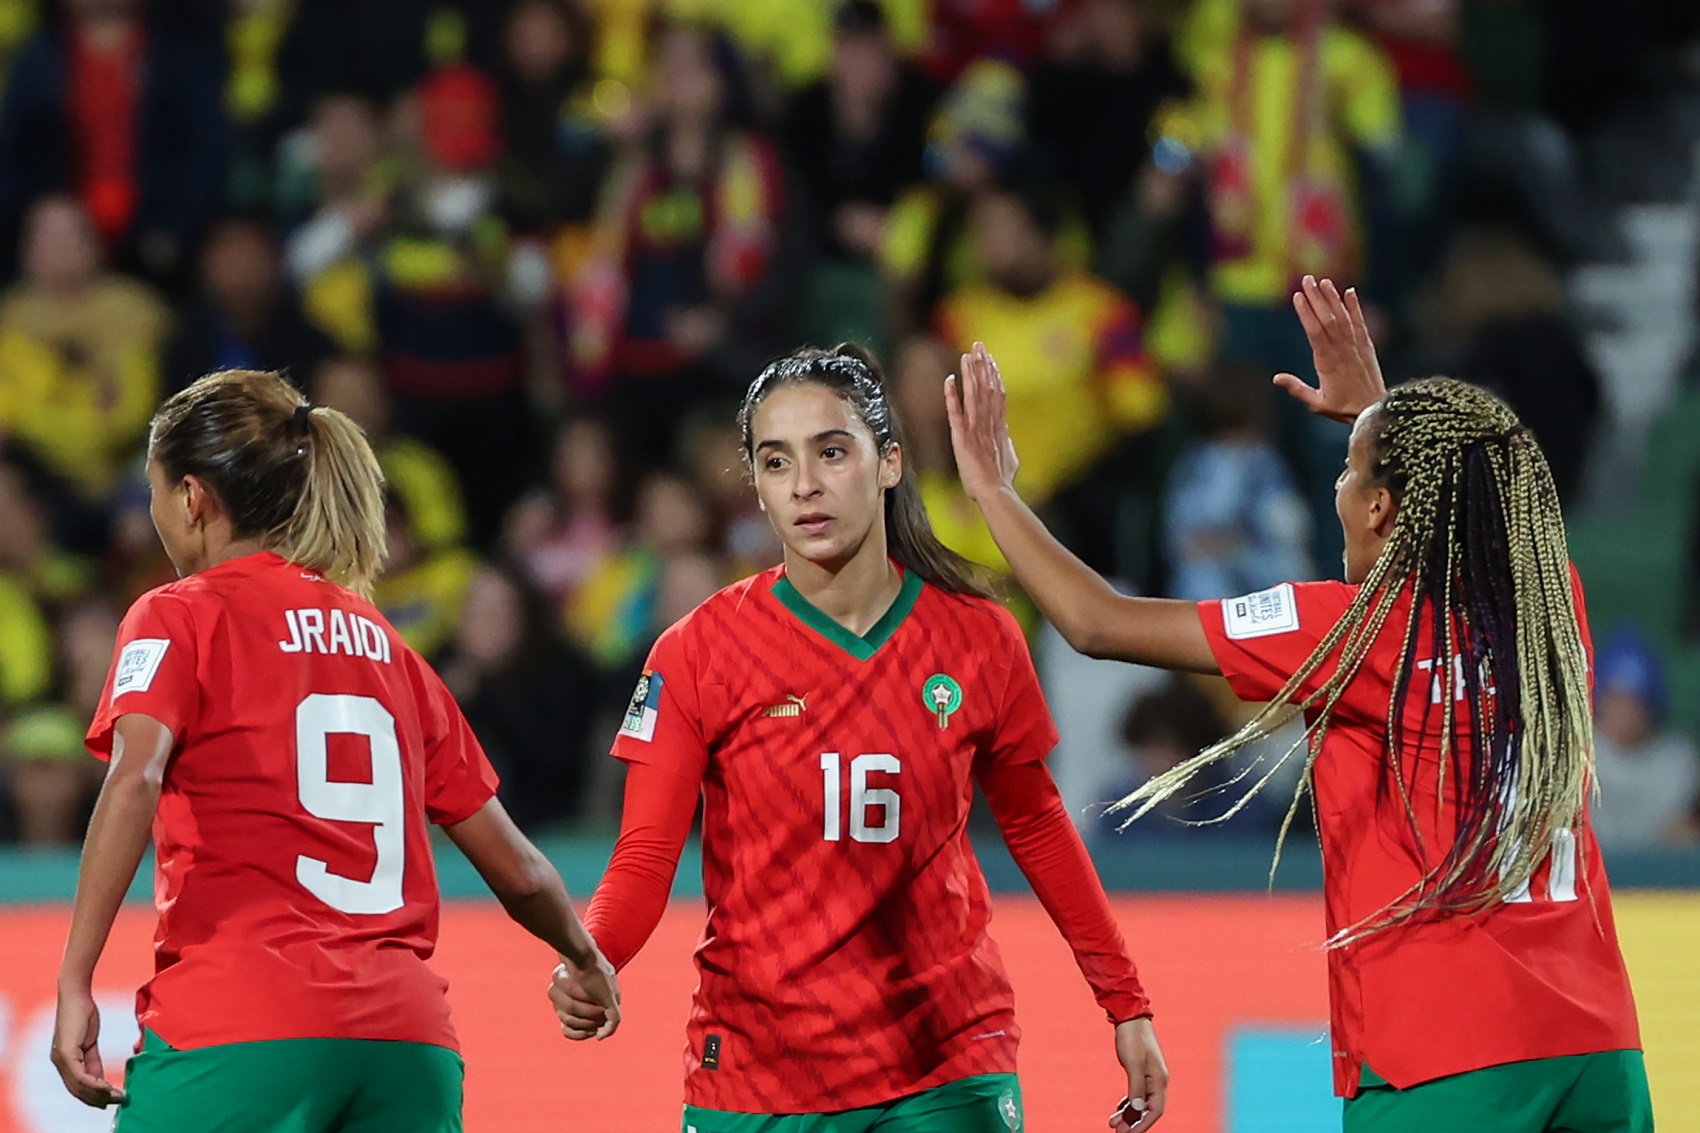 سيدات المغرب يصنعن التاريخ بإنجاز عربي استثنائي في كأس العالم للسيدات صحيفة الوئام الالكترونية 3049